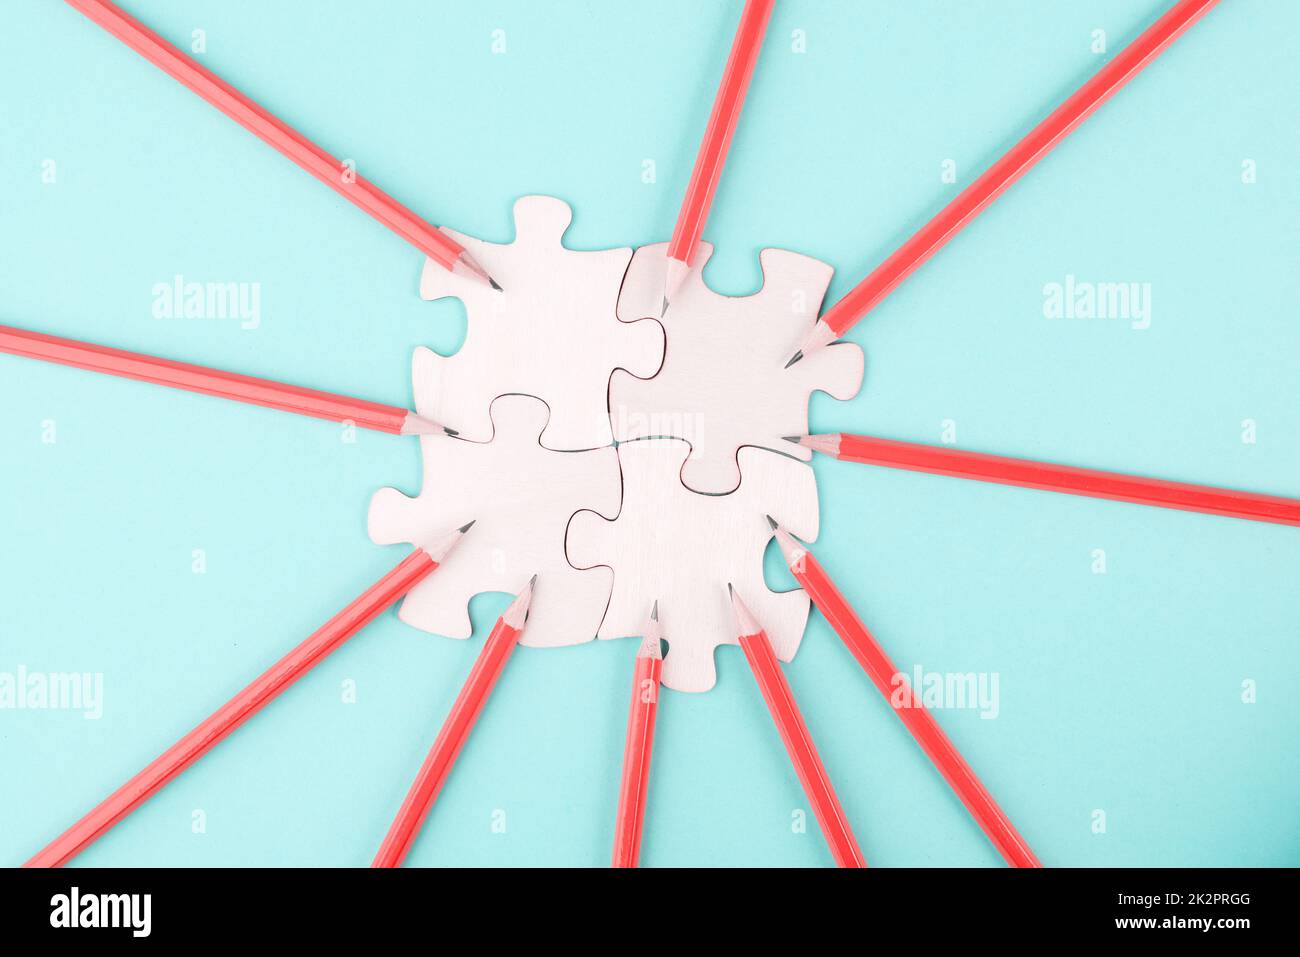 Als Team arbeiten, Puzzleteile verbinden sich, Bleistifte zeigen auf das Puzzle, Ideenfindung, Business- und Bildungskonzept Stockfoto